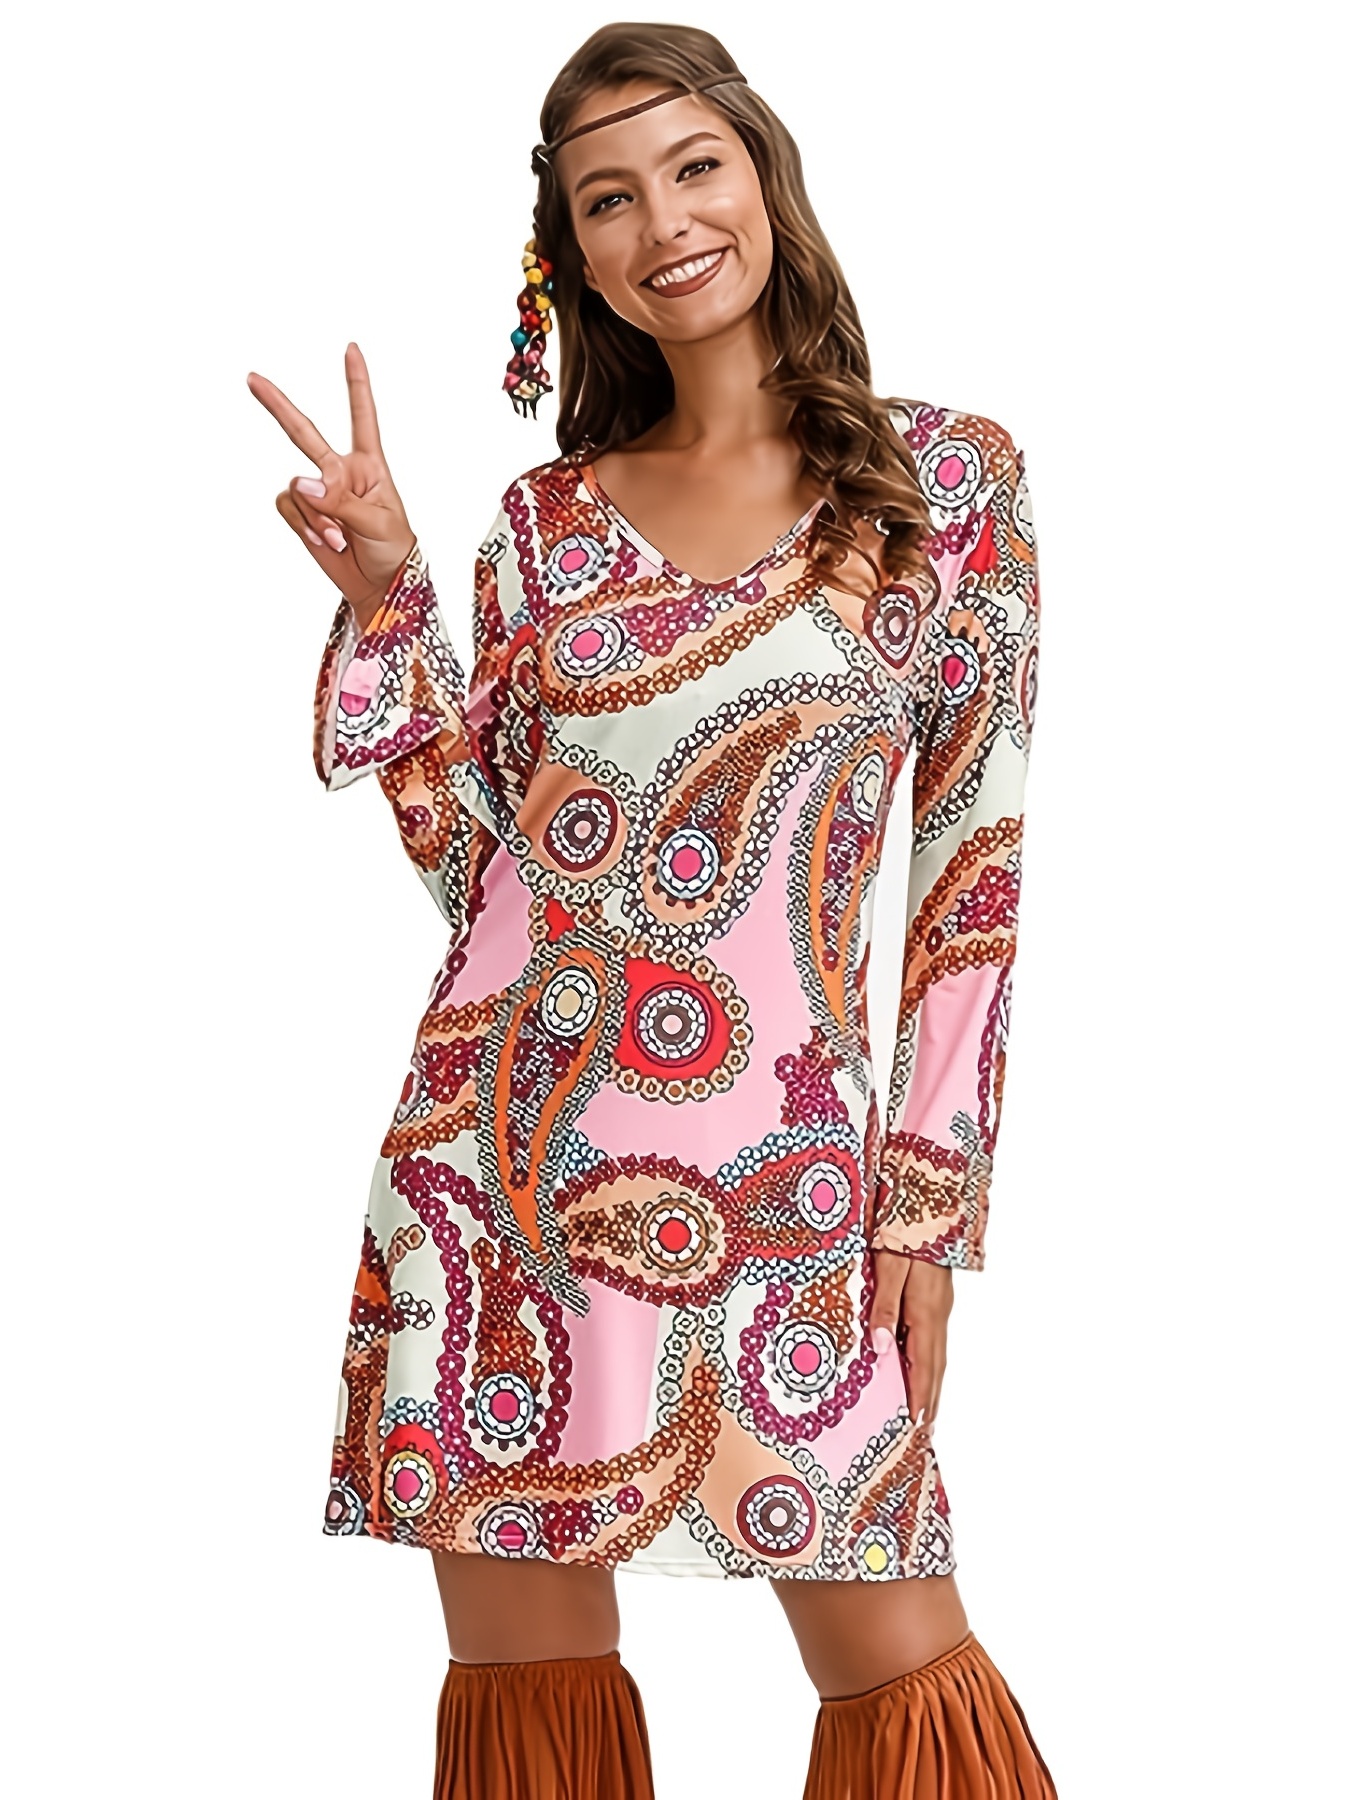 Vestido de disfraz de Halloween hippie de los años 70, traje de carnaval vintage con mangas largas acampanadas y estampado floral, ropa de mujer